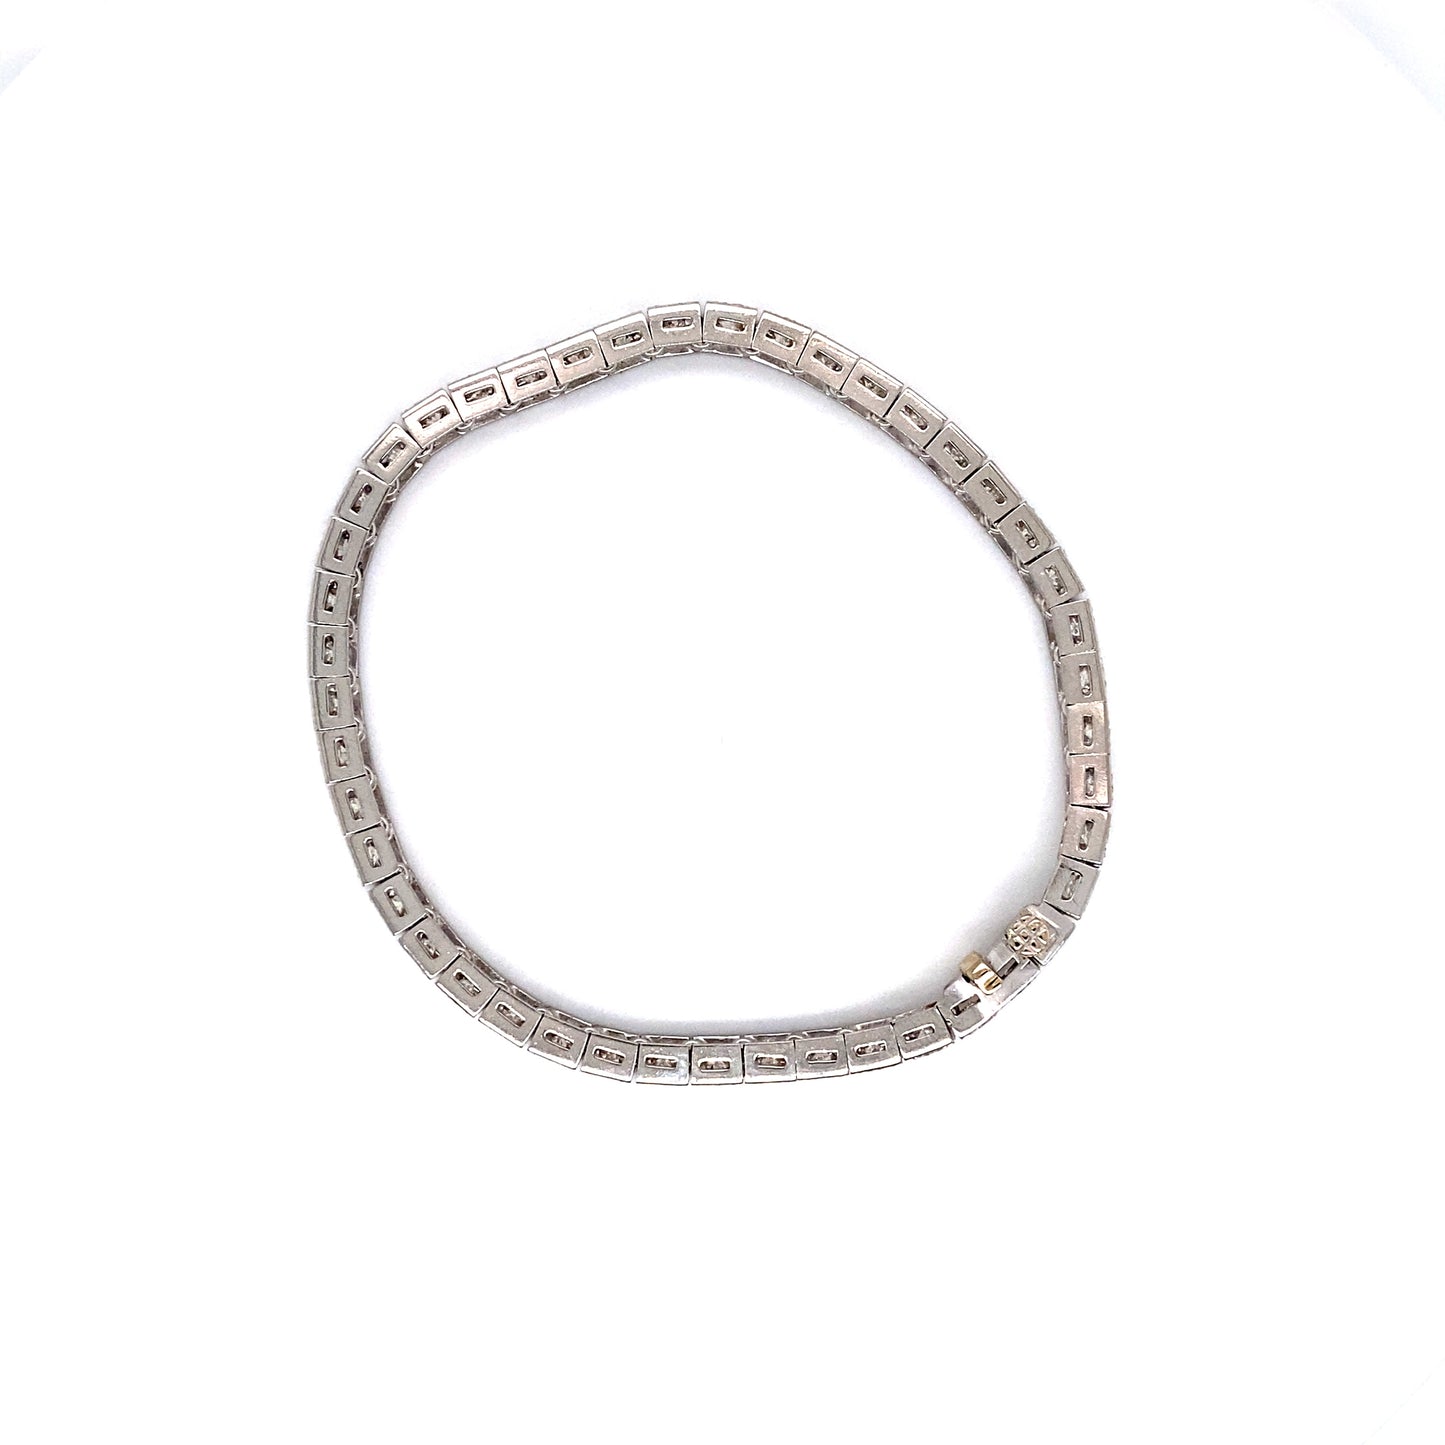 Circa 1950s 11.25 Carat Diamond Tennis Bracelet in Platinum